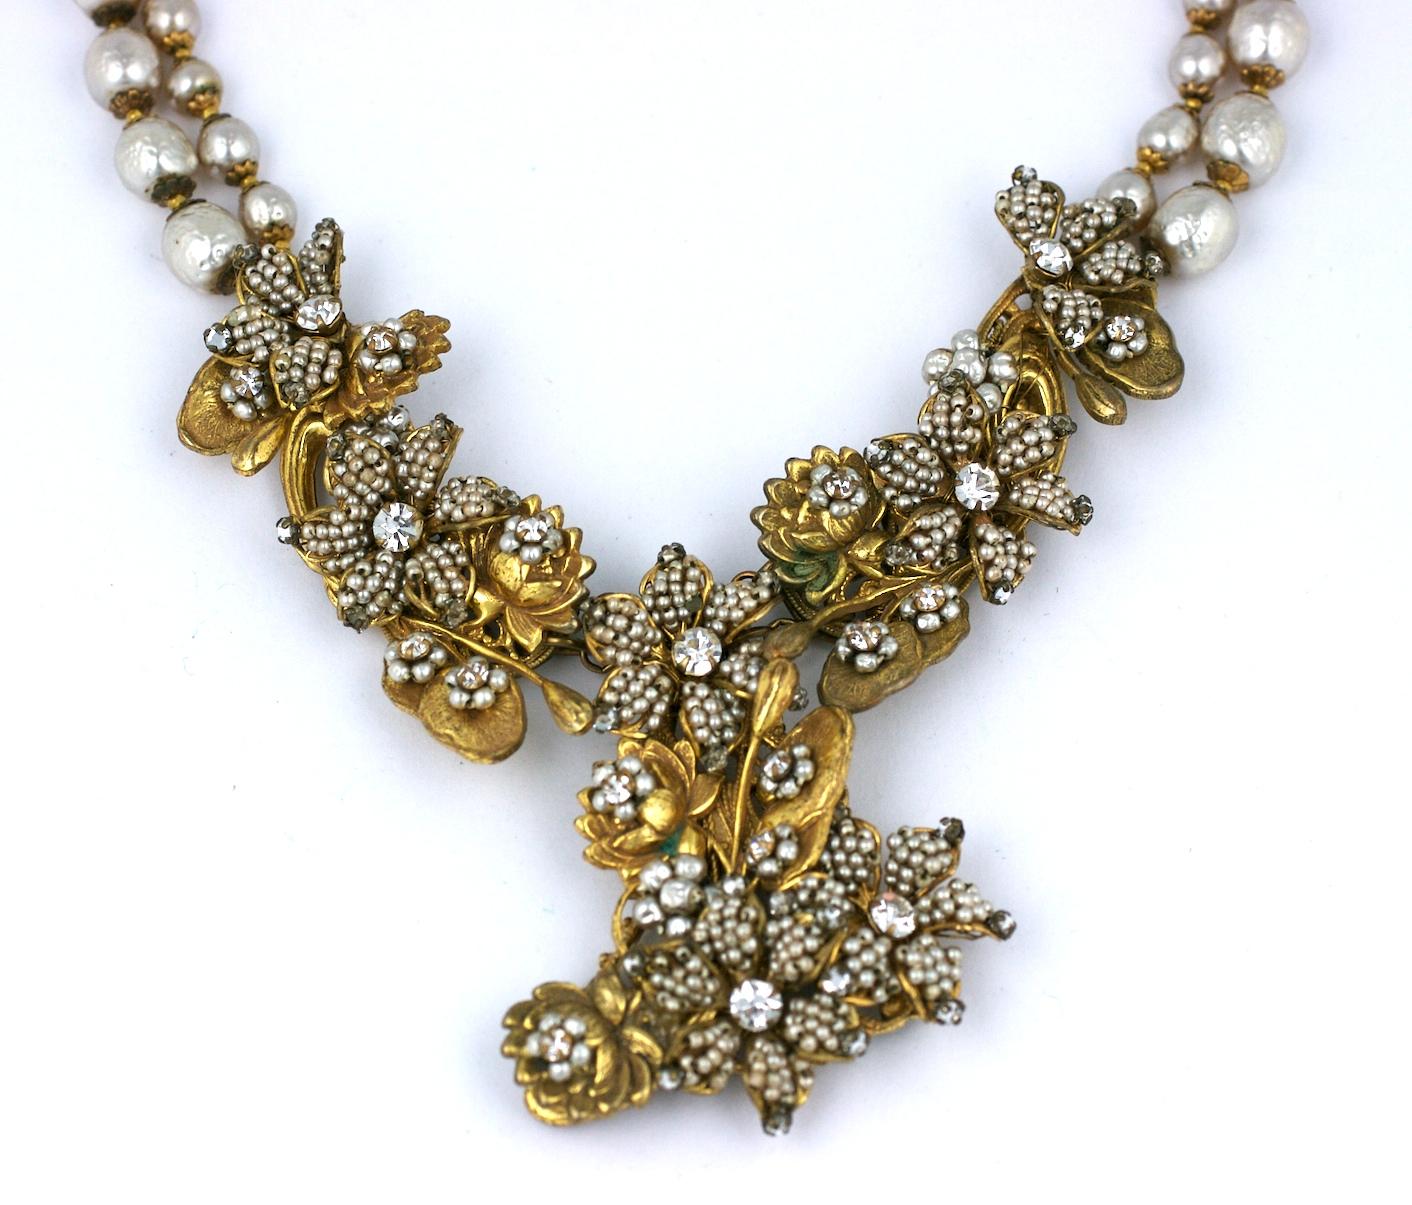 Magnifique et grand collier Miriam Haskell composé de têtes de fleurs microperlées en fausses perles sur des bases de nénuphars et de nénuphars en métal doré russe, signature de Haskell. Collier ancien au savoir-faire élaboré des années 1930. Les